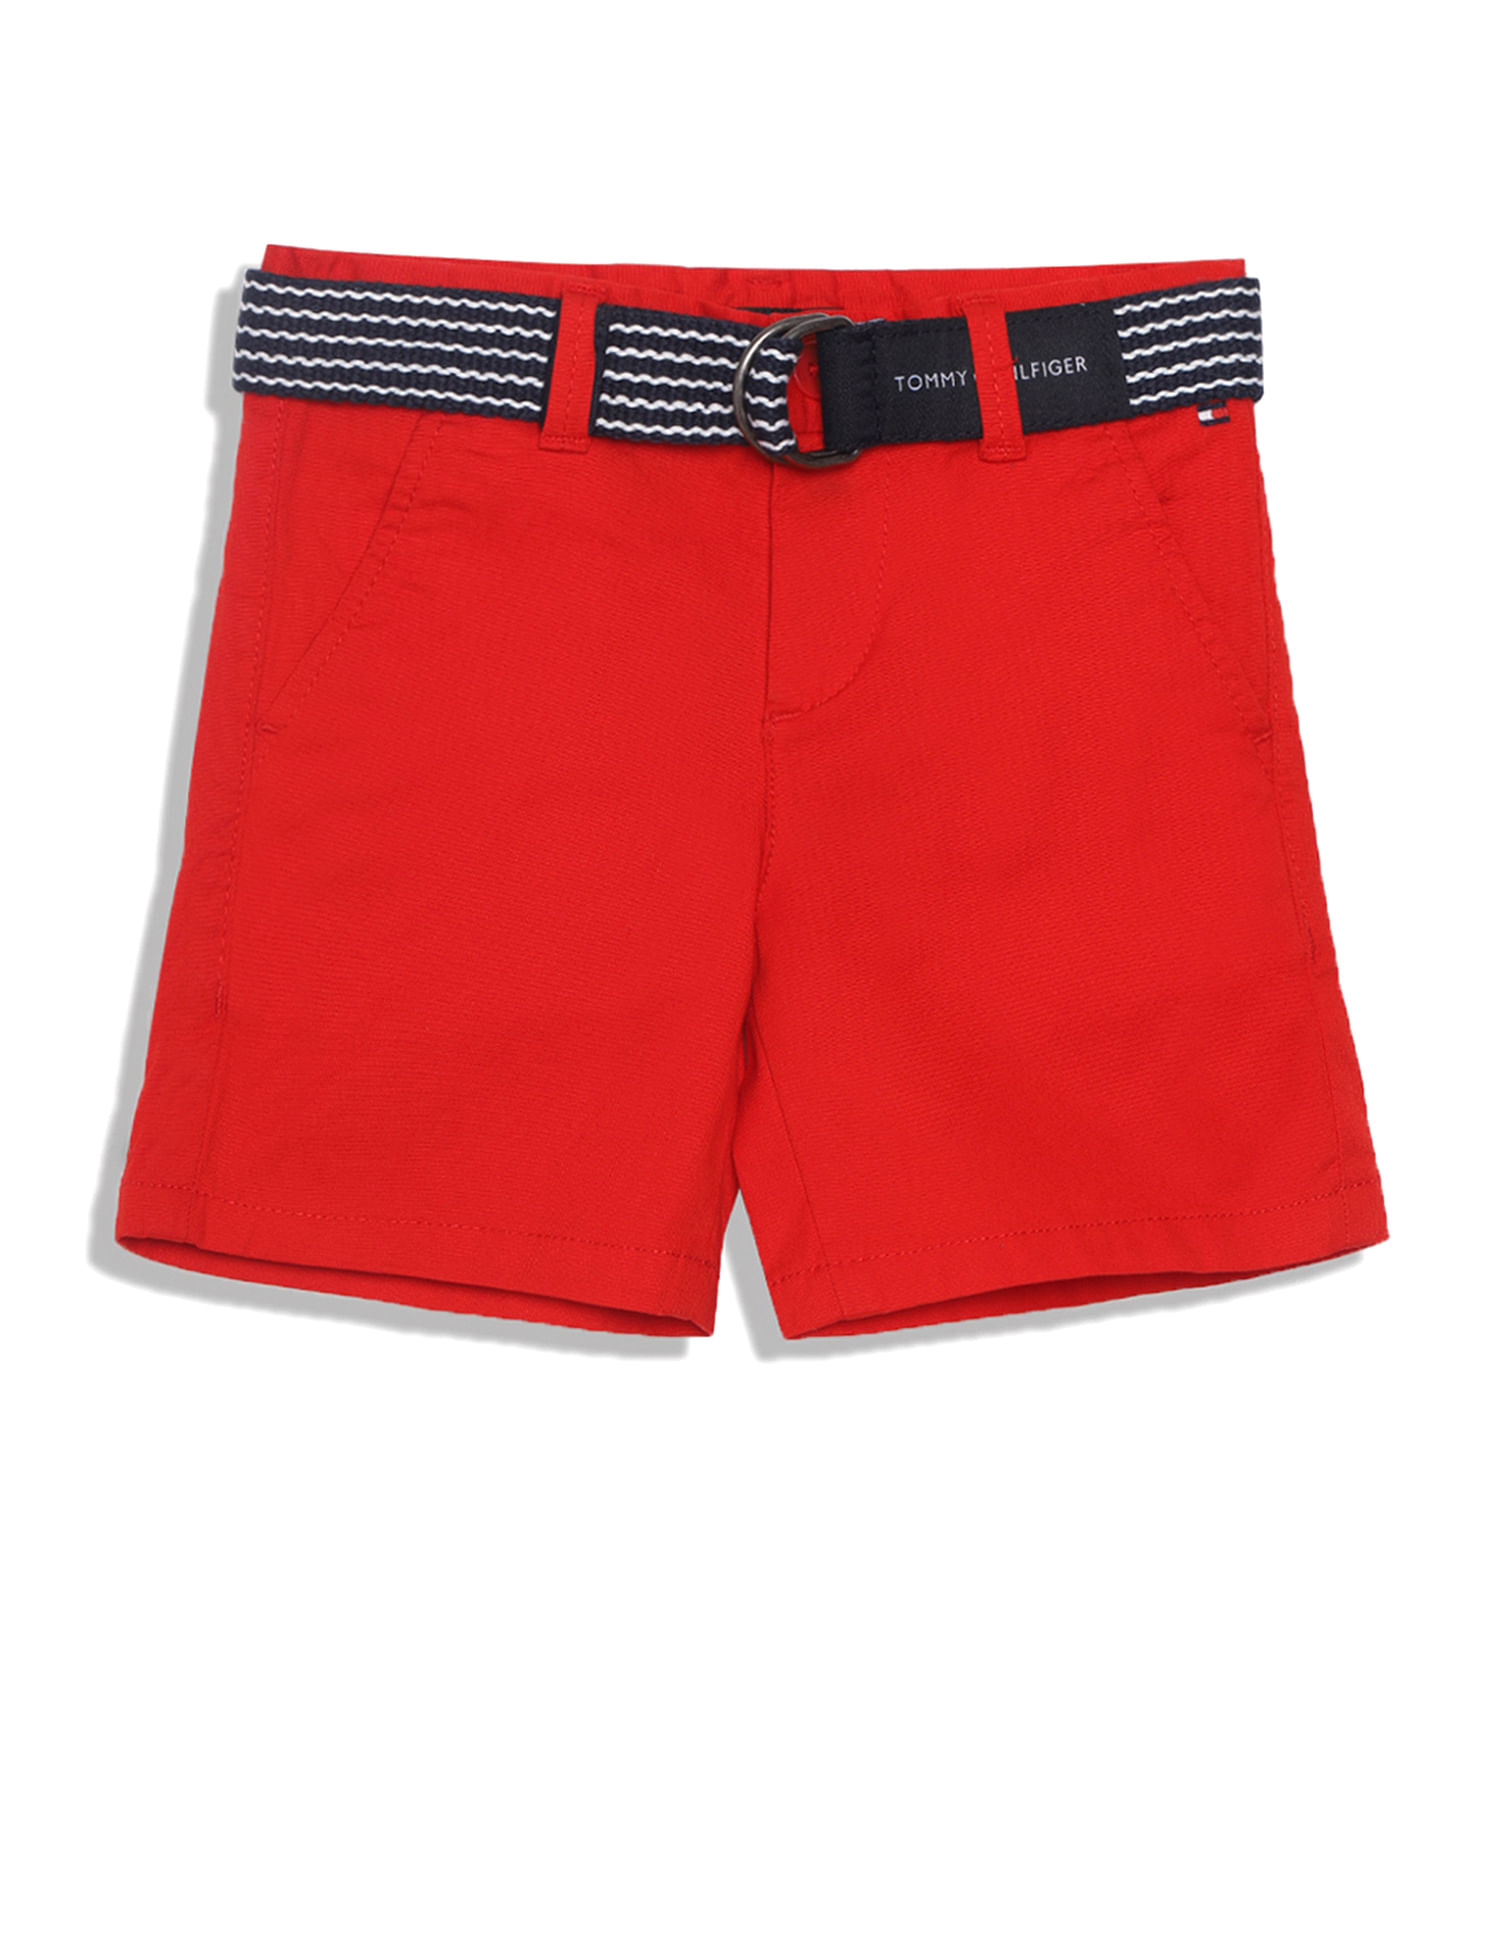 Buy Tommy Hilfiger Kids Boys Solid Dobby Chino Shorts 